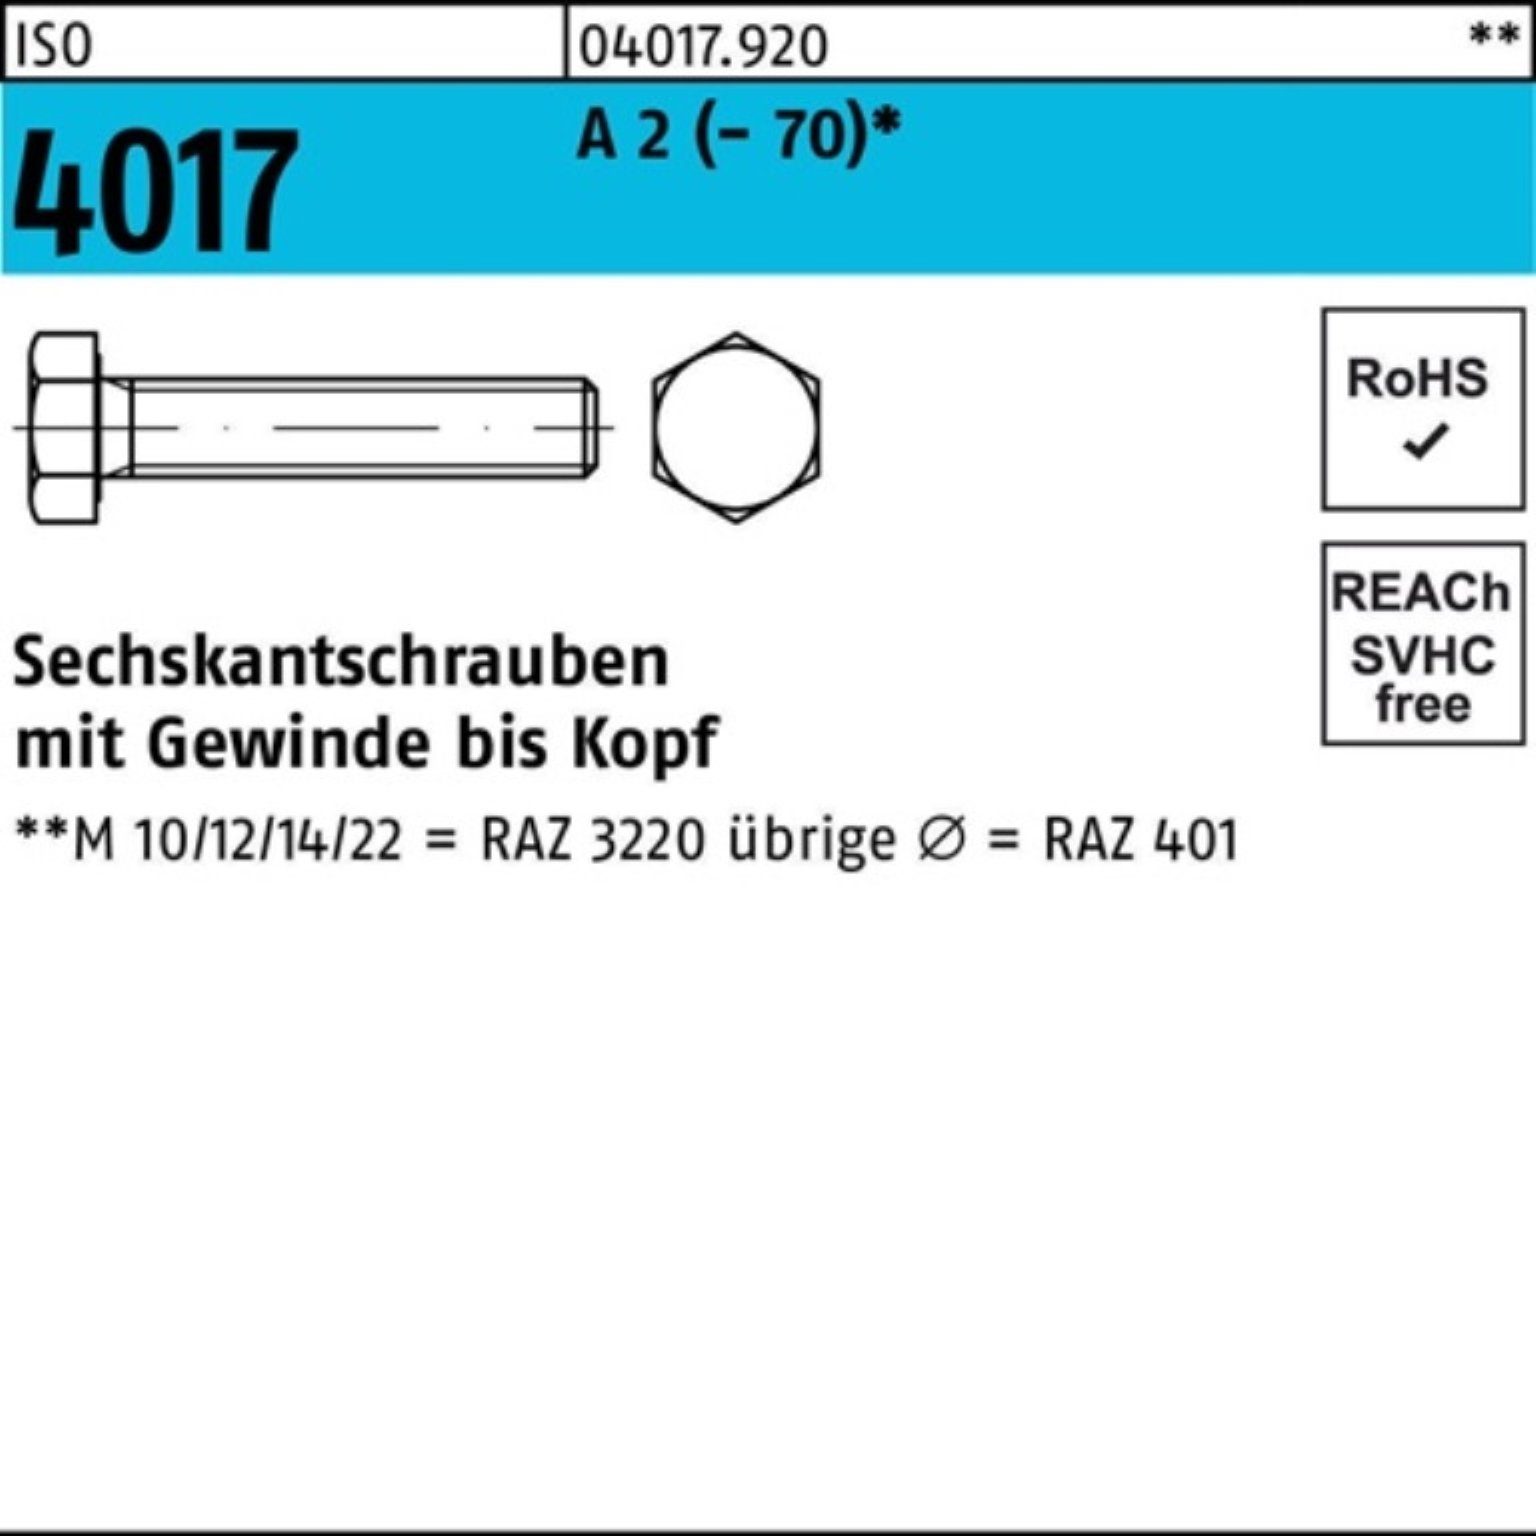 Bufab Sechskantschraube 100er 2 80 4017 (70) M33x VG A I 1 Stück Pack Sechskantschraube ISO